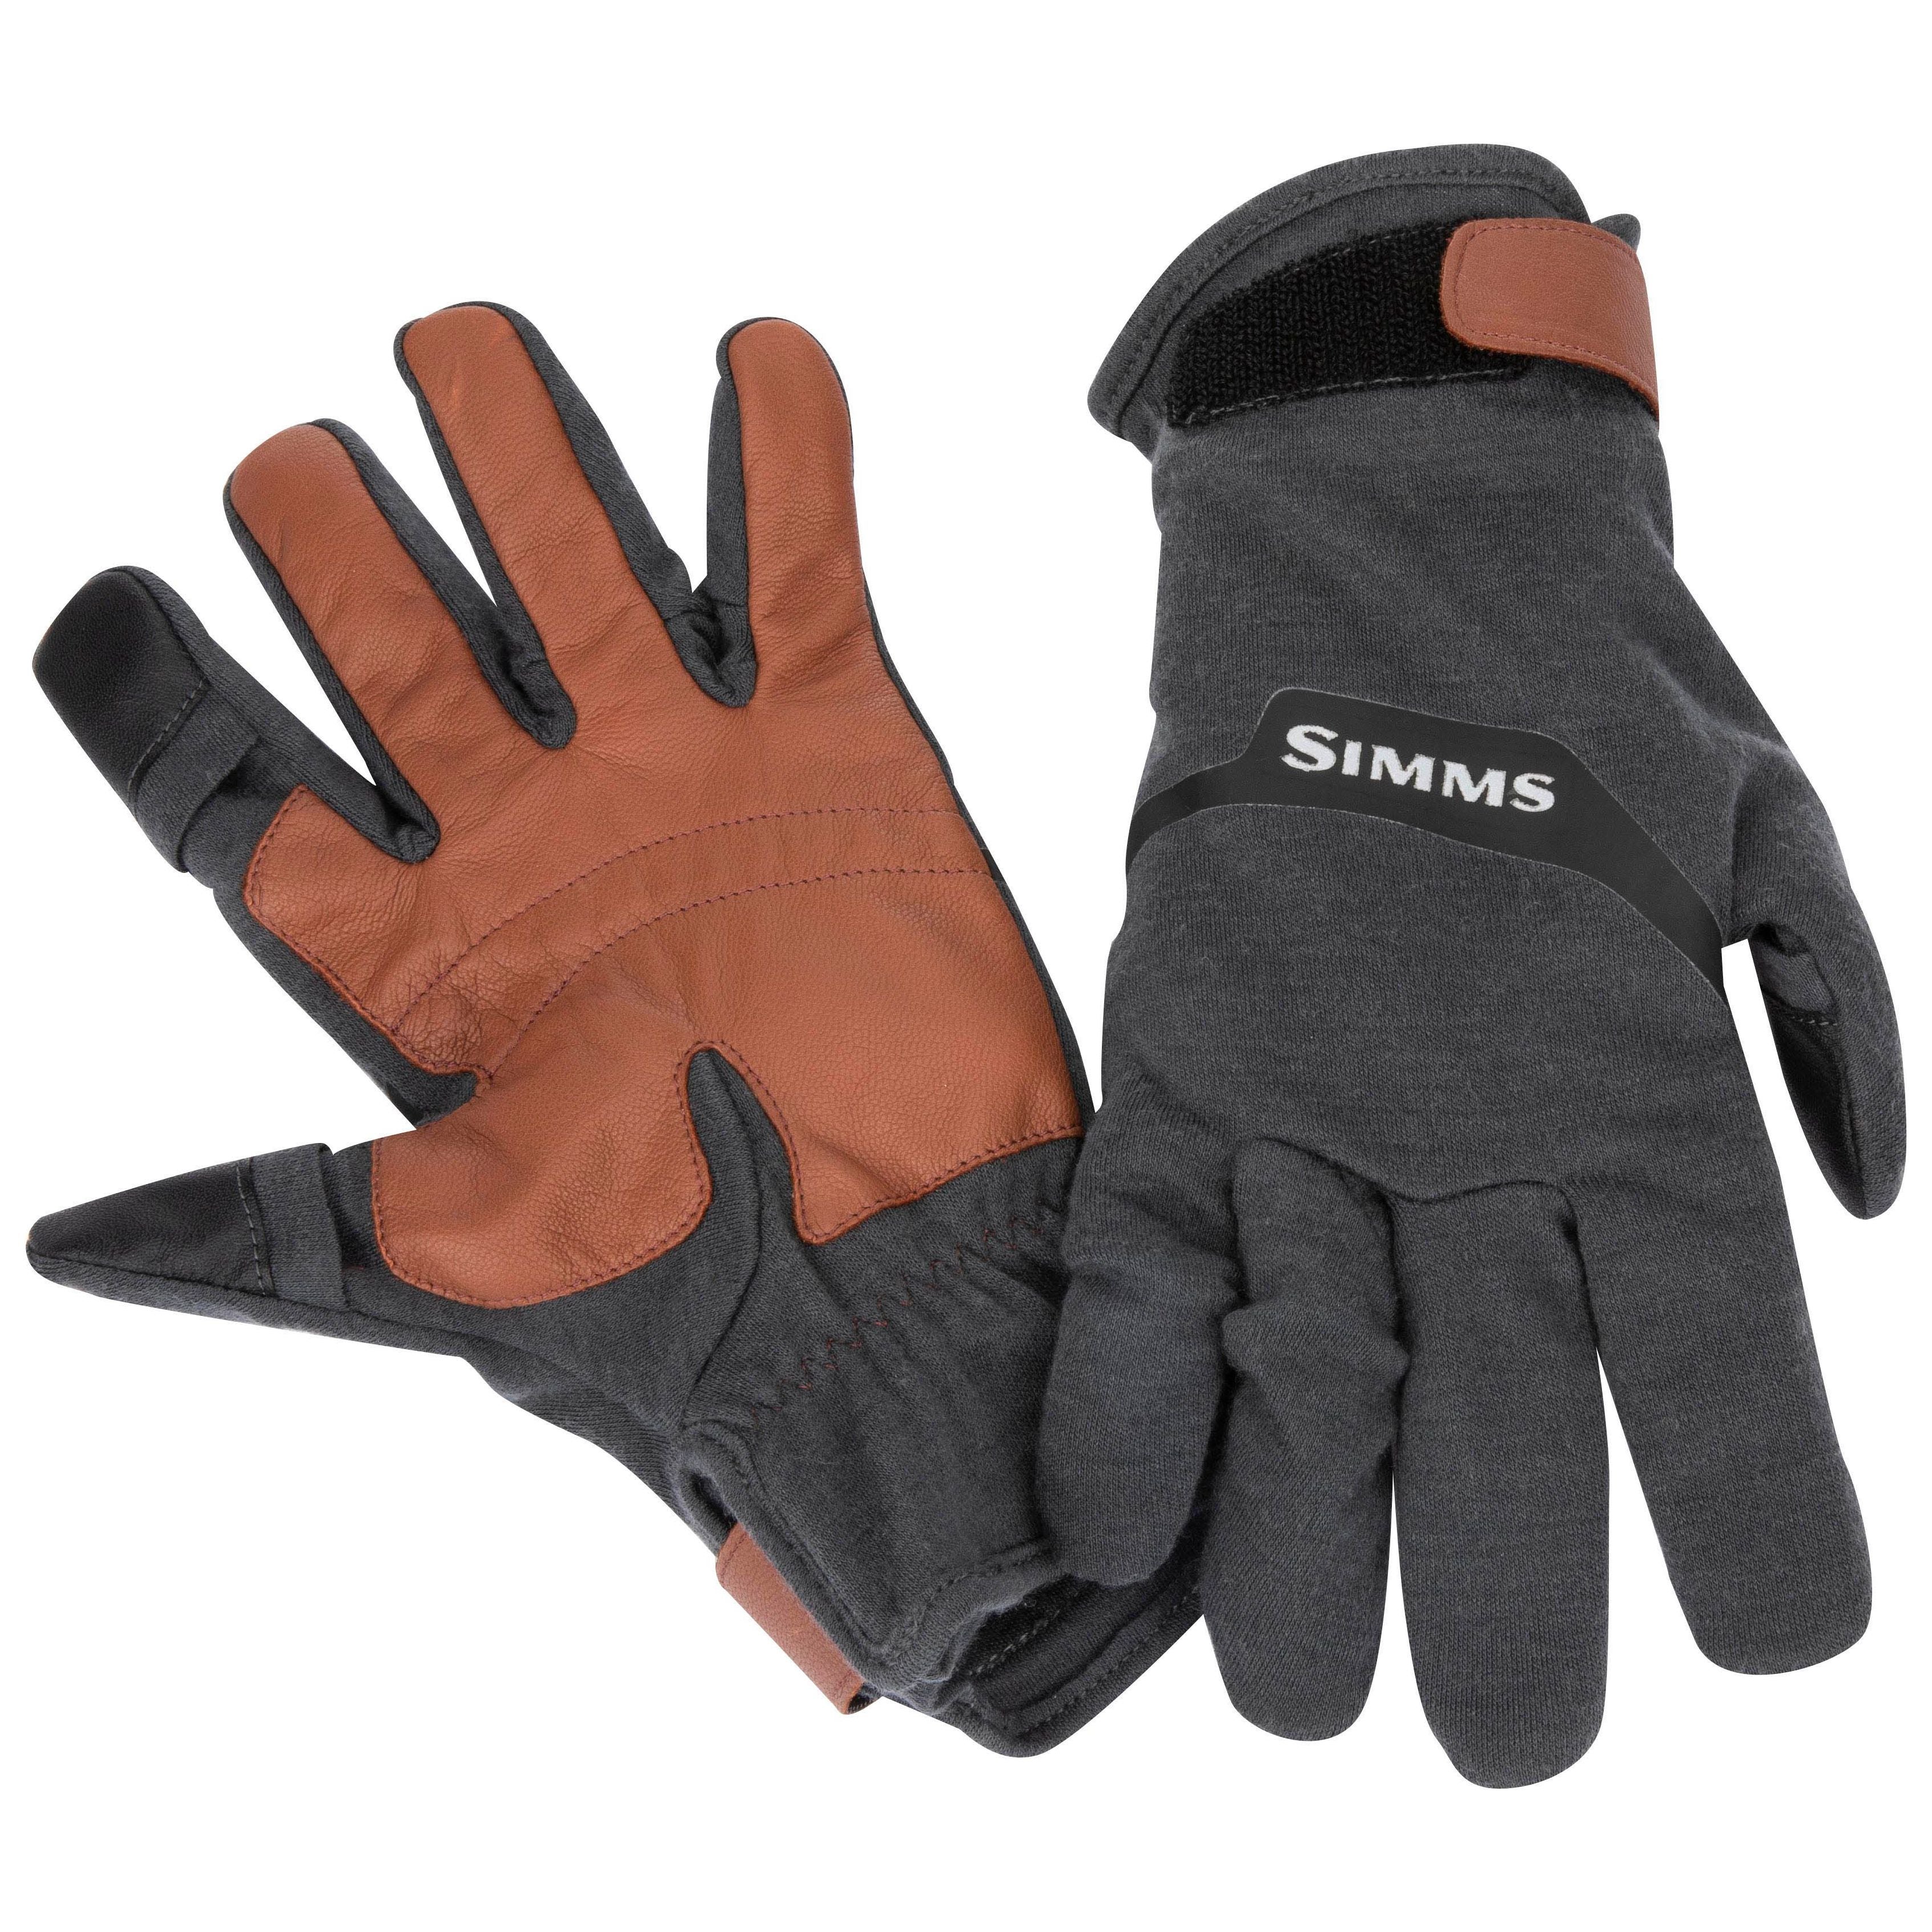 Simms Lightweight Wool Flex Glove Carbon Image 01